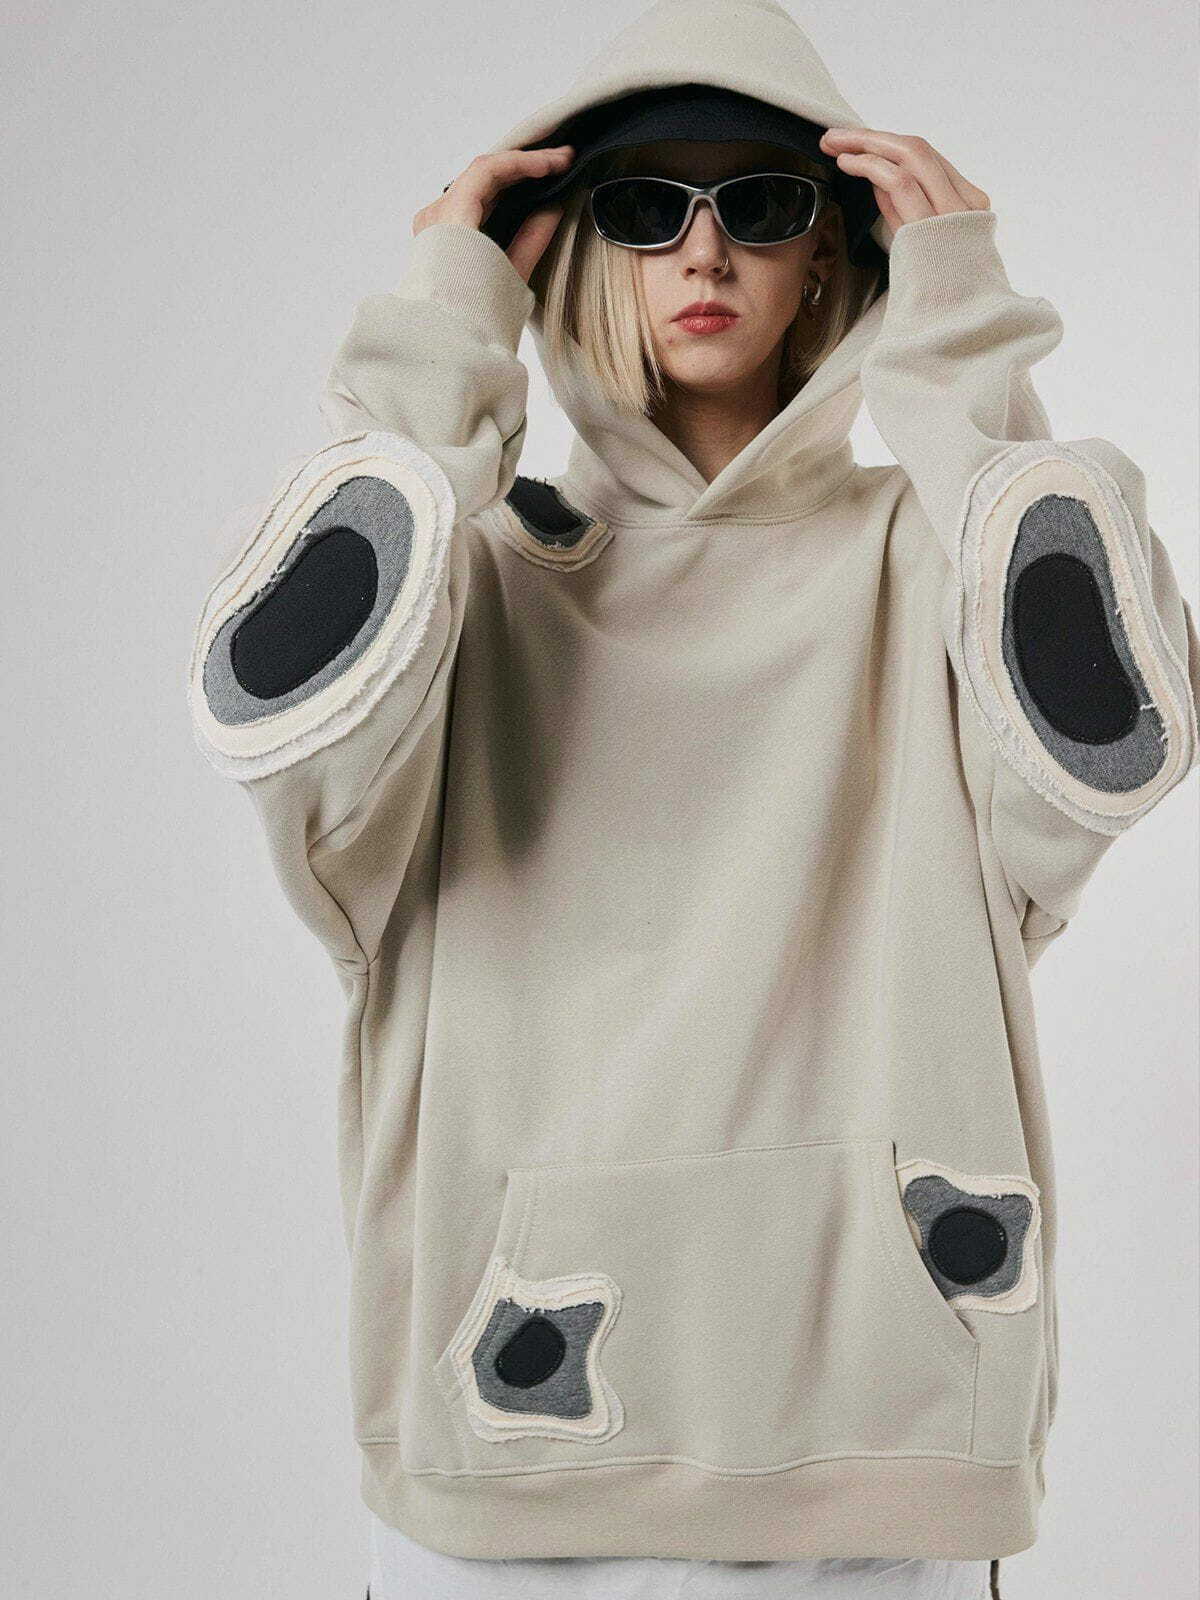 dynamic patchwork hoodie edgy streetwear 2676